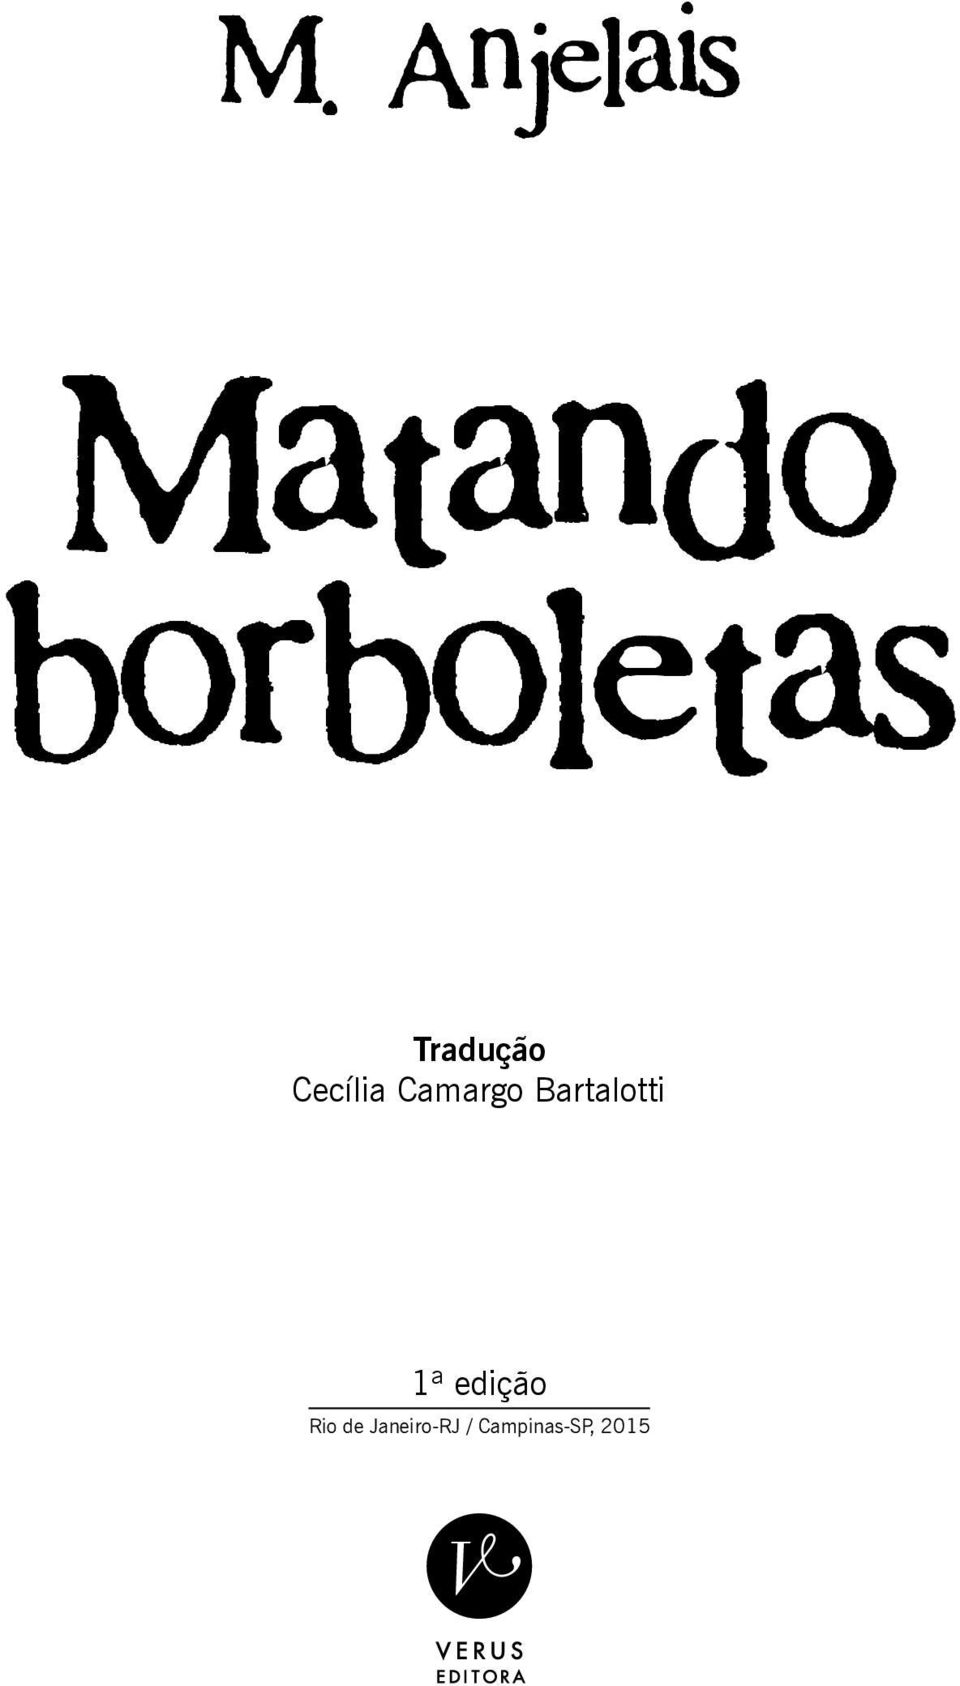 Camargo Bartalotti 1ª edição